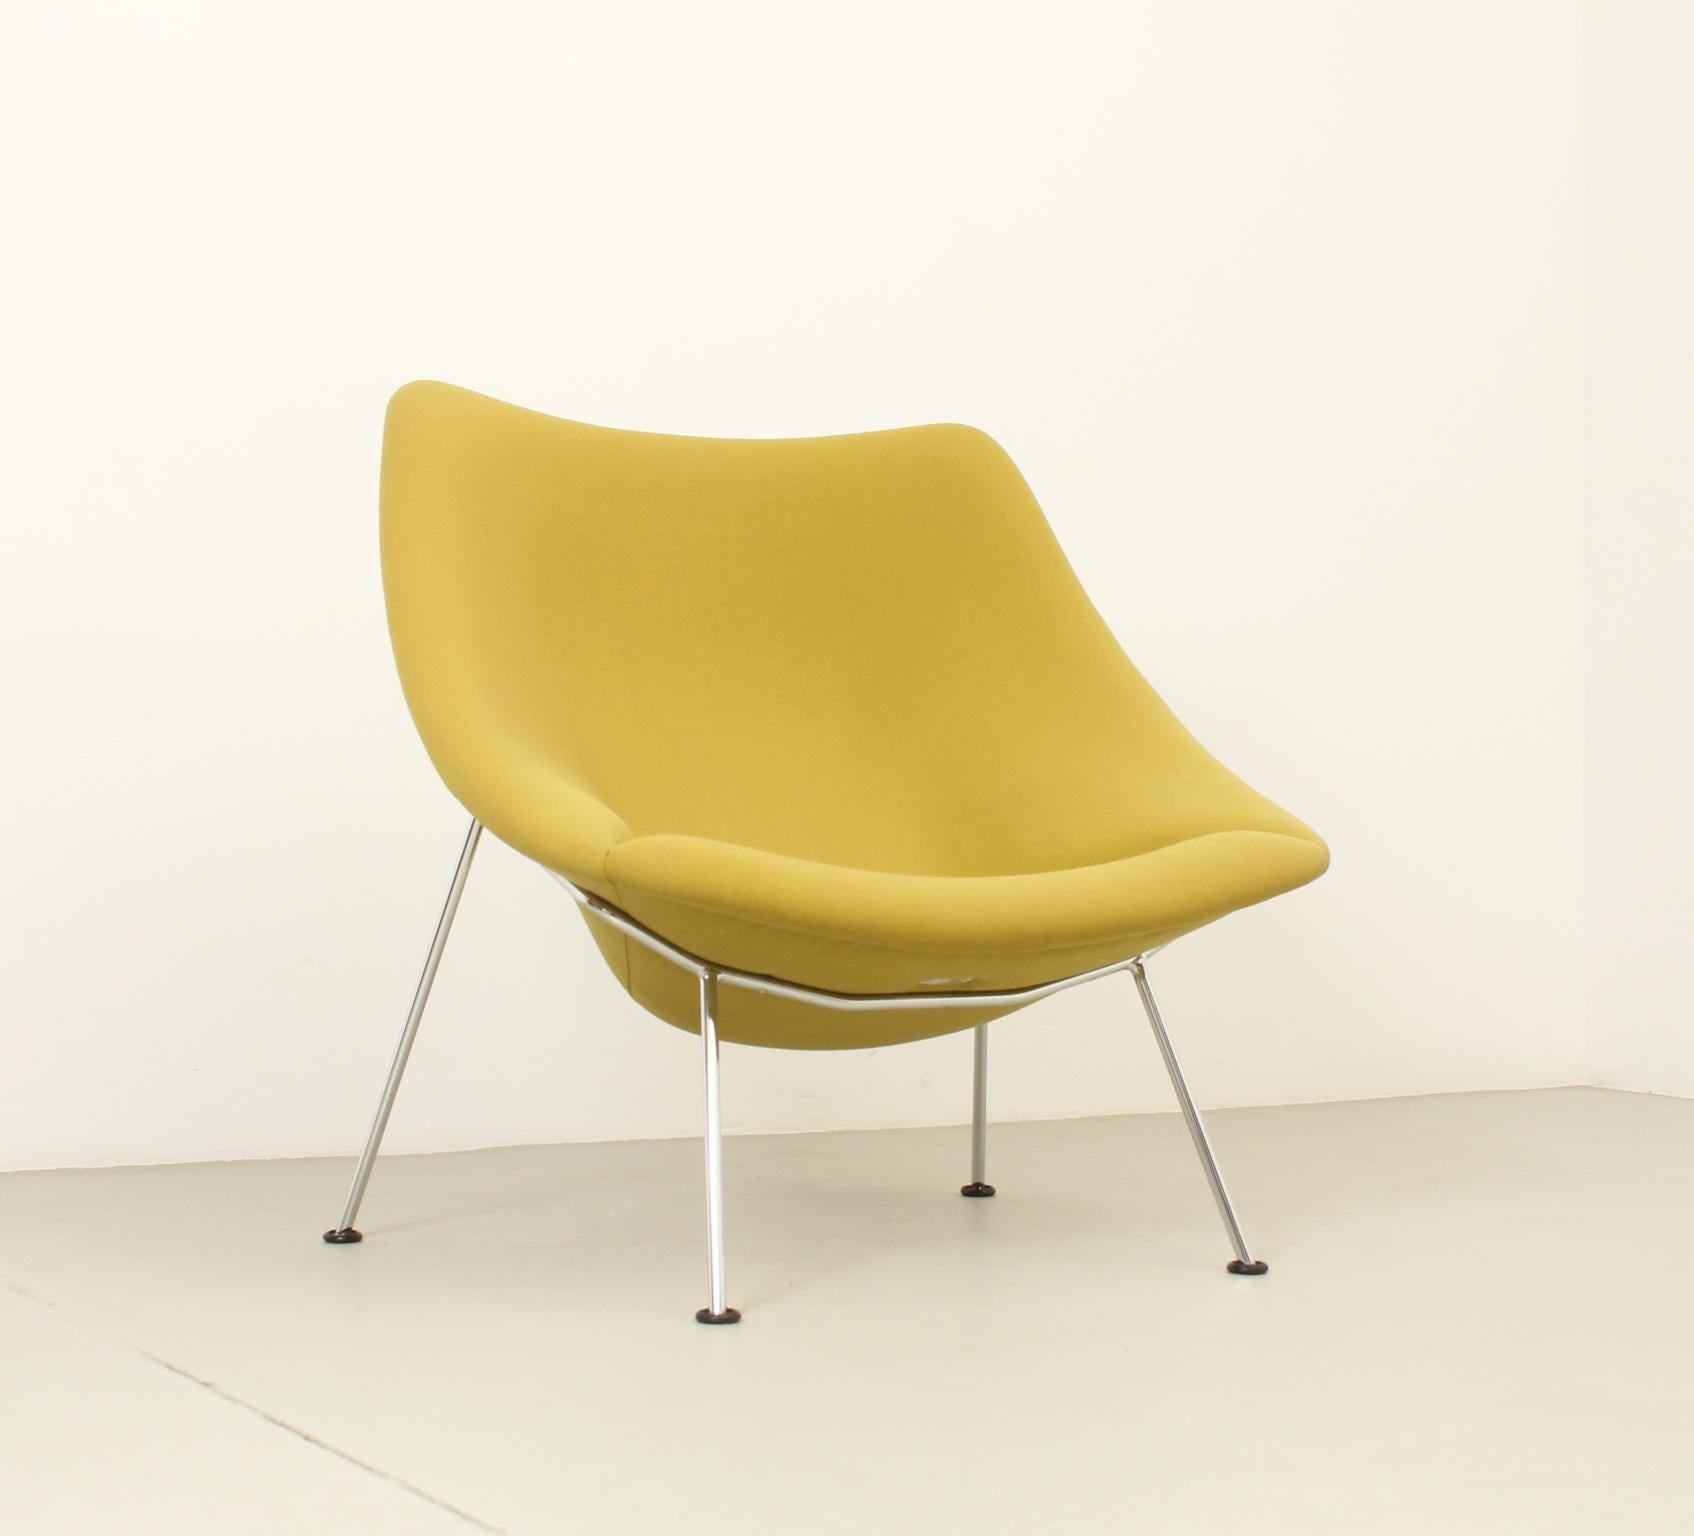 Der Stuhl Oyster wurde 1958 vom französischen Designer Pierre Paulin für die niederländische Firma Artifort entworfen. Gestell aus verchromtem Stahl, gepolstert mit Originalstoff. Unterschrieben. 